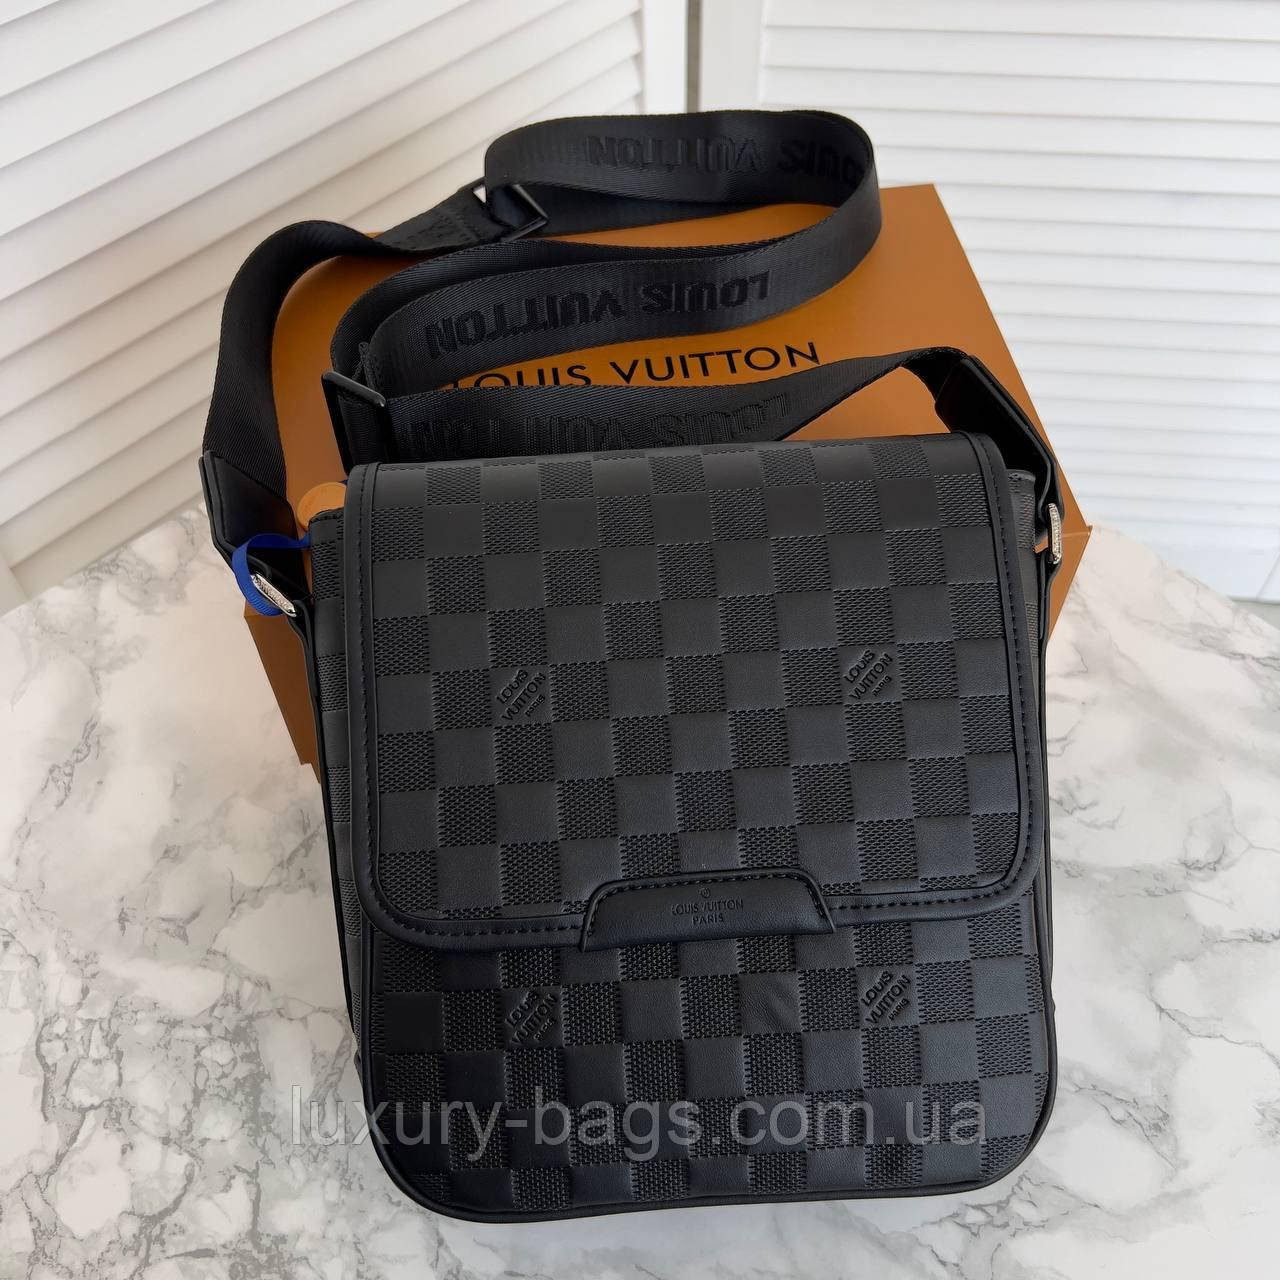 Стильна чоловіча стильна сумка Louis Vuitton (люкс якість)